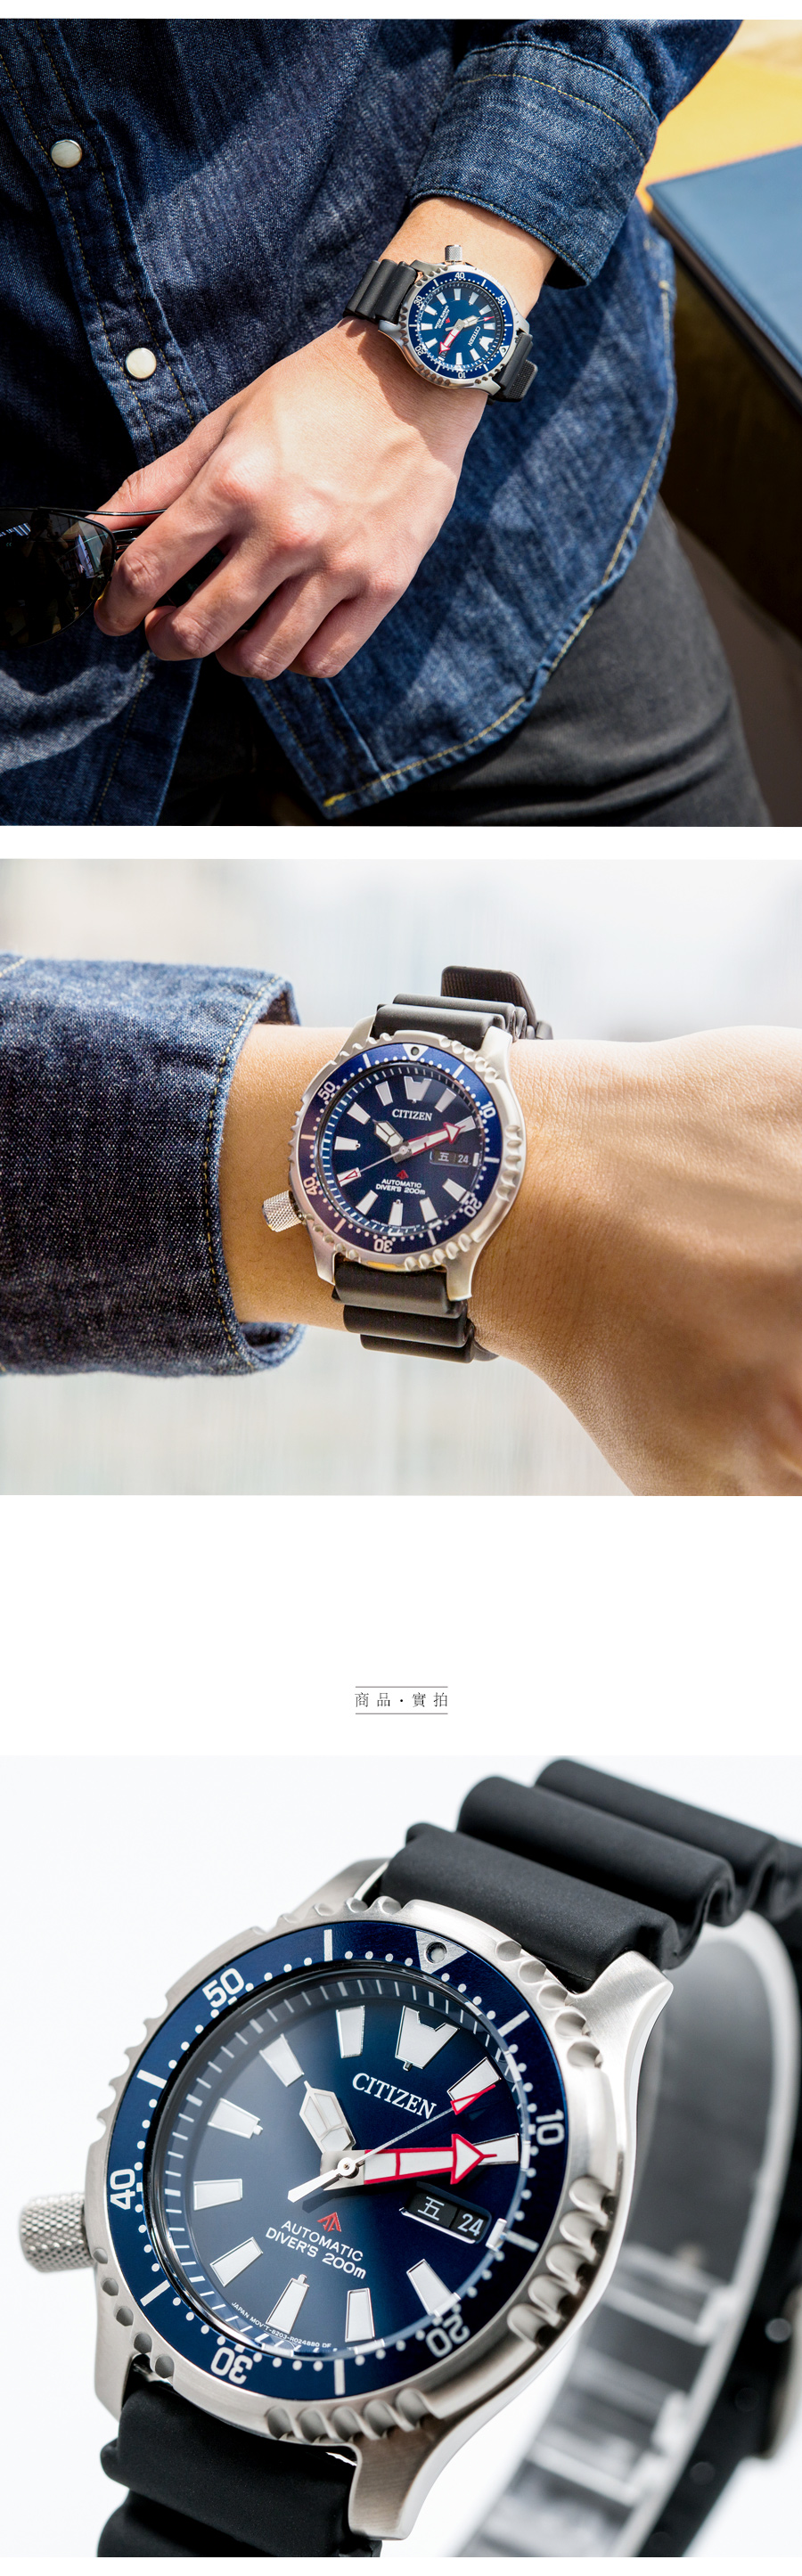 CITIZEN 星辰 NY0081-10L 悠遊歷險機械錶/藍 自動上鍊 水鬼錶 公司貨保固 熱賣中!